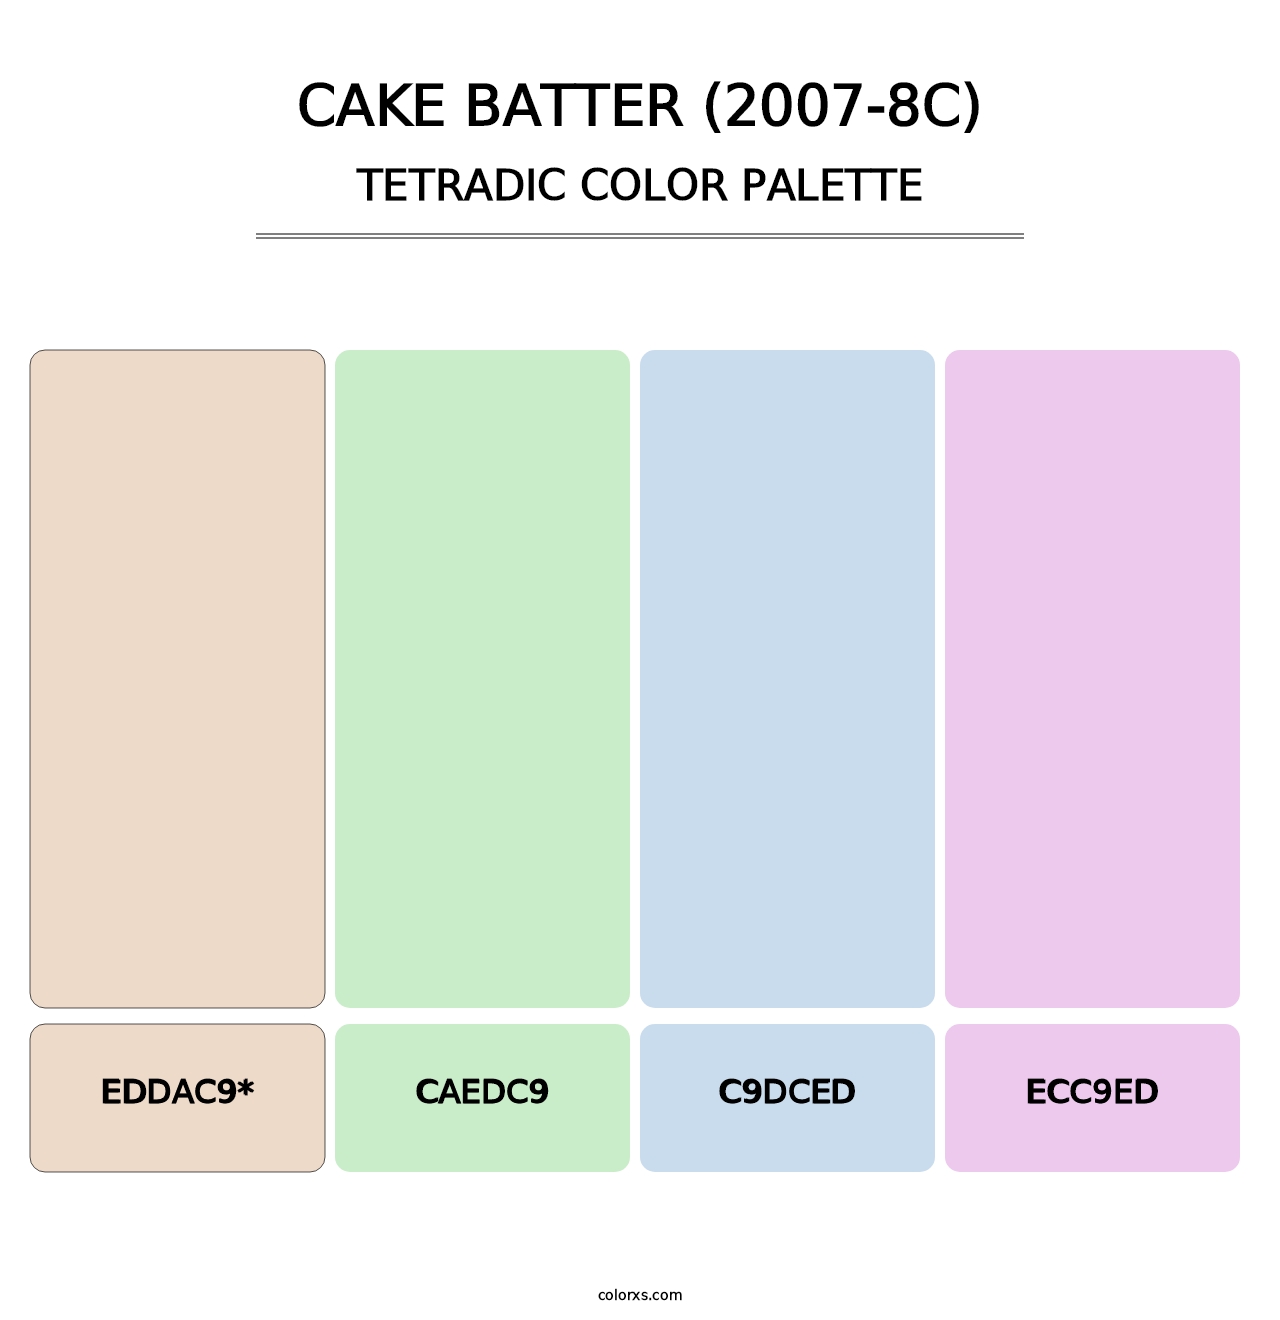 Cake Batter (2007-8C) - Tetradic Color Palette